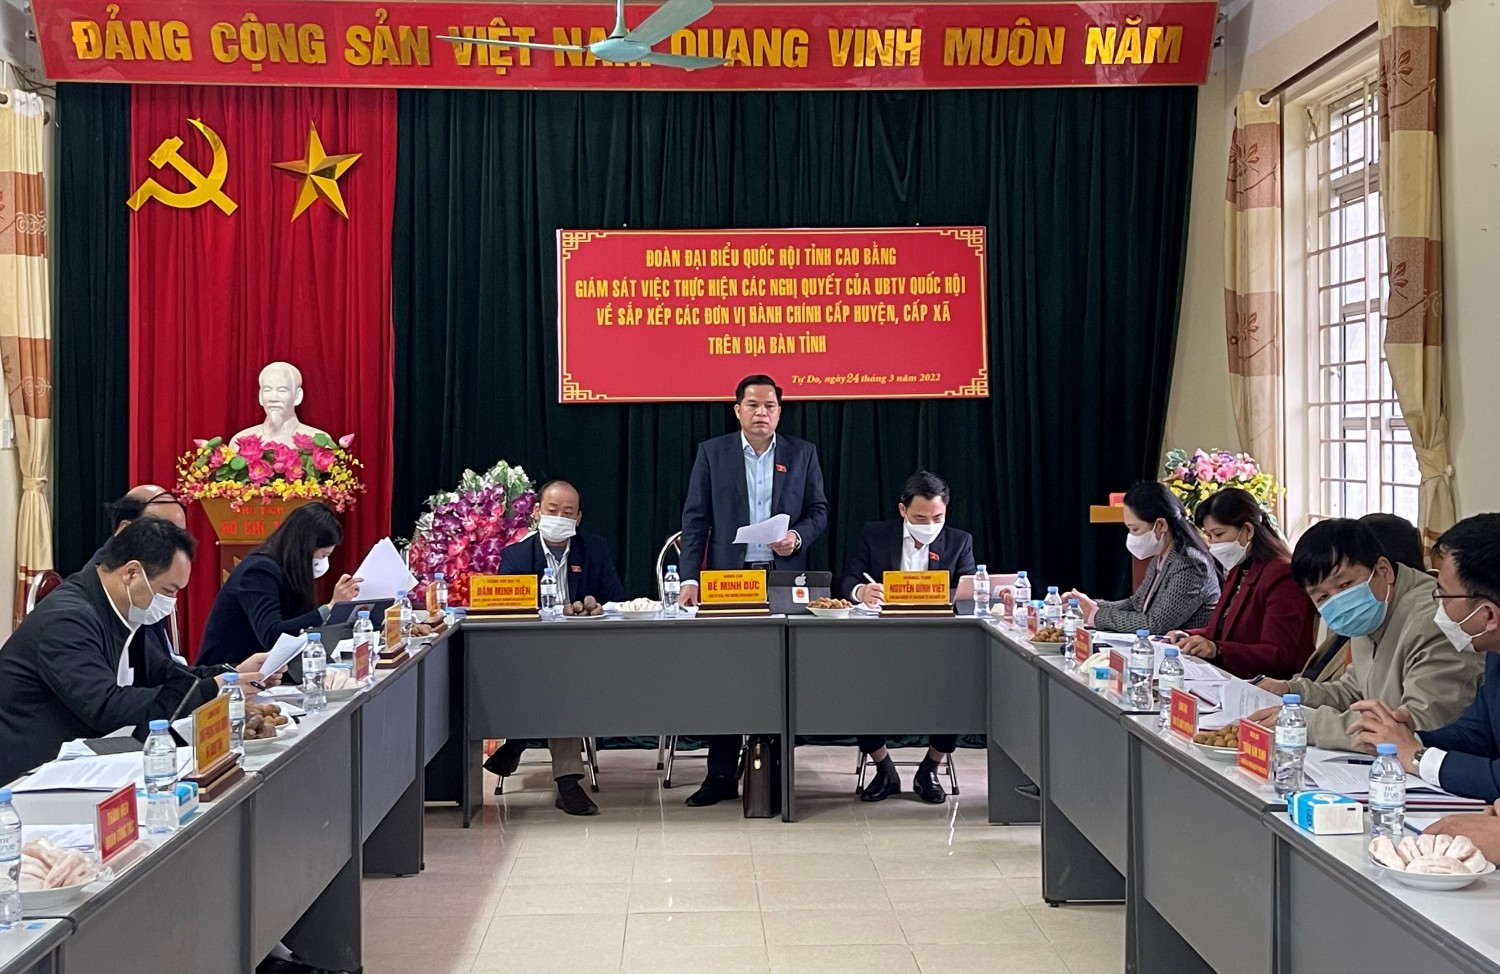 Đoàn ĐBQH tỉnh Cao Bằng: Giám sát việc thực hiện nghị quyết của Quốc hội về sắp xếp các đơn vị hành chính tại Quảng Hòa